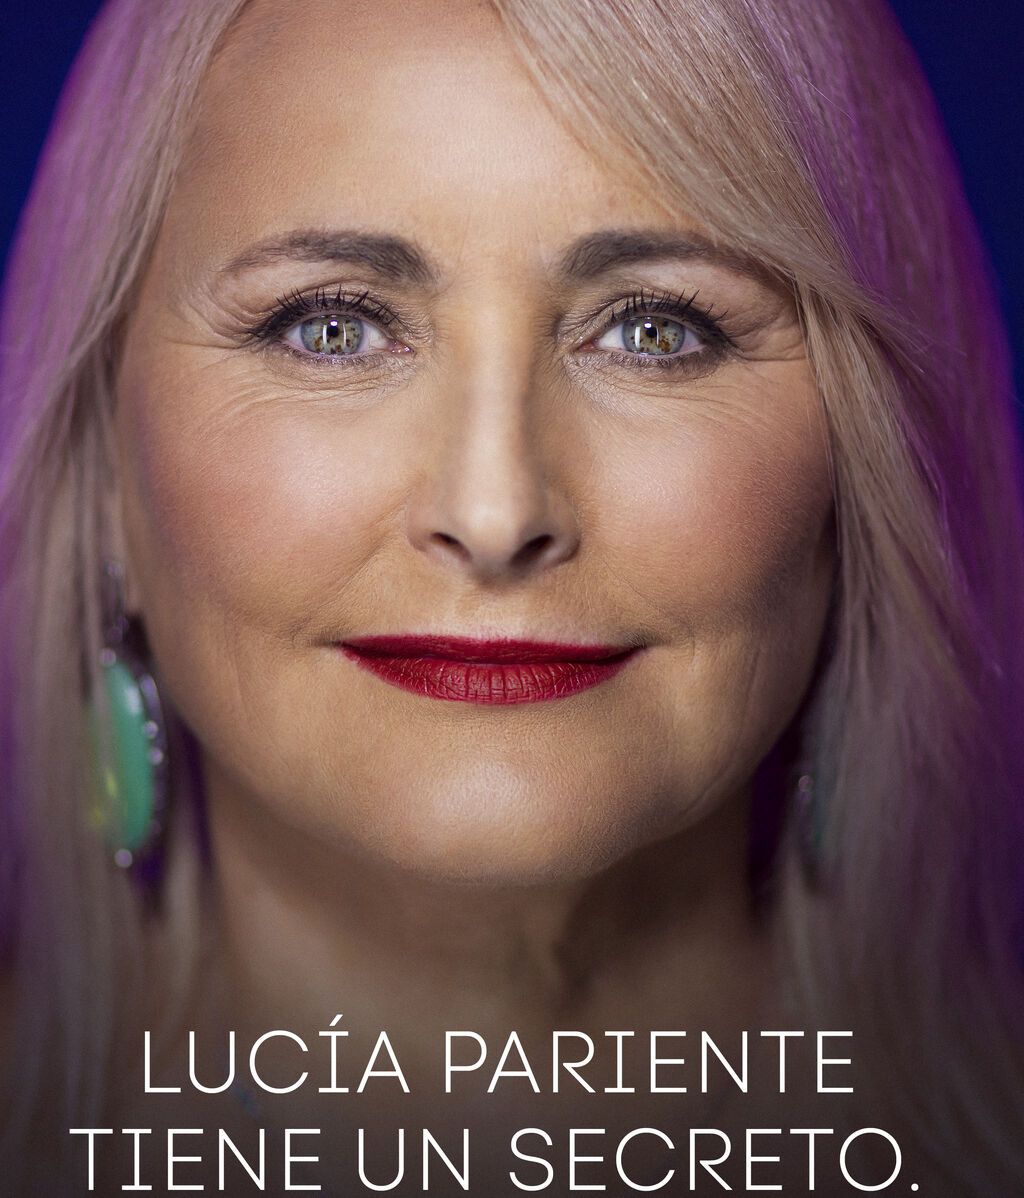 Lucia Pariente